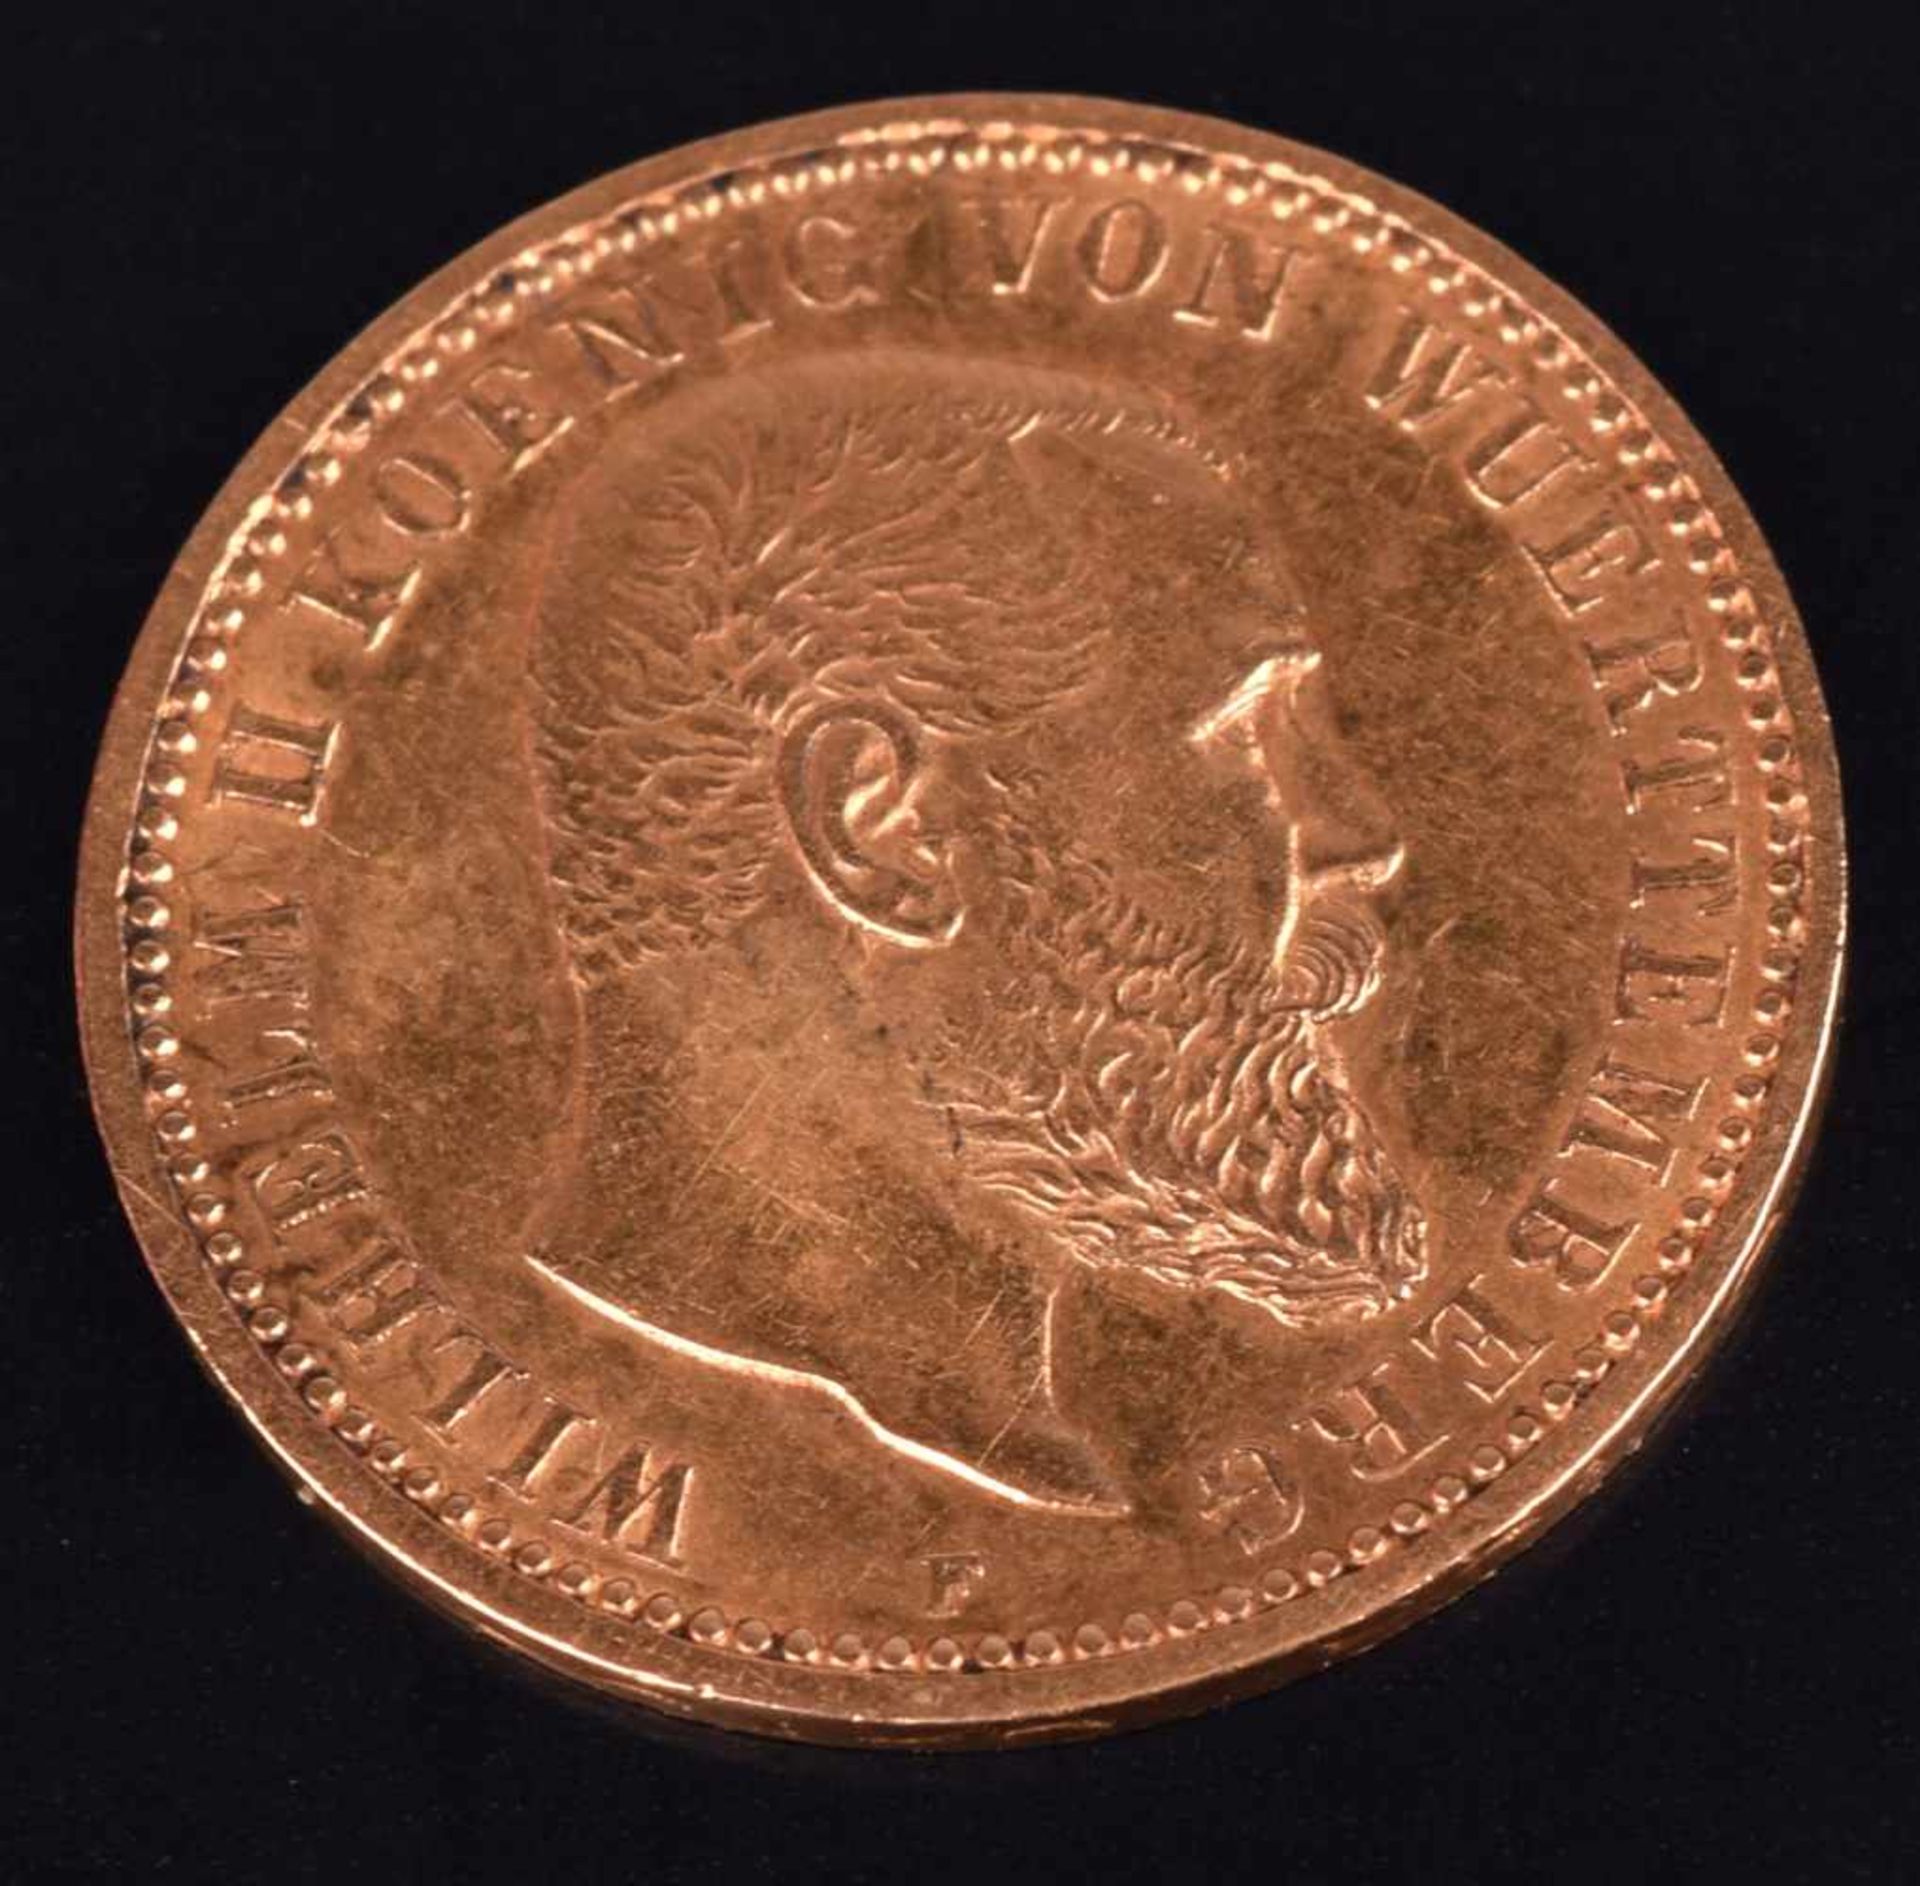 Goldmünze Kaiserreich - Württemberg 1903 10 Mark in Gold, 900/1000, 3,58 g, av. Wilhelm II König von - Bild 2 aus 3